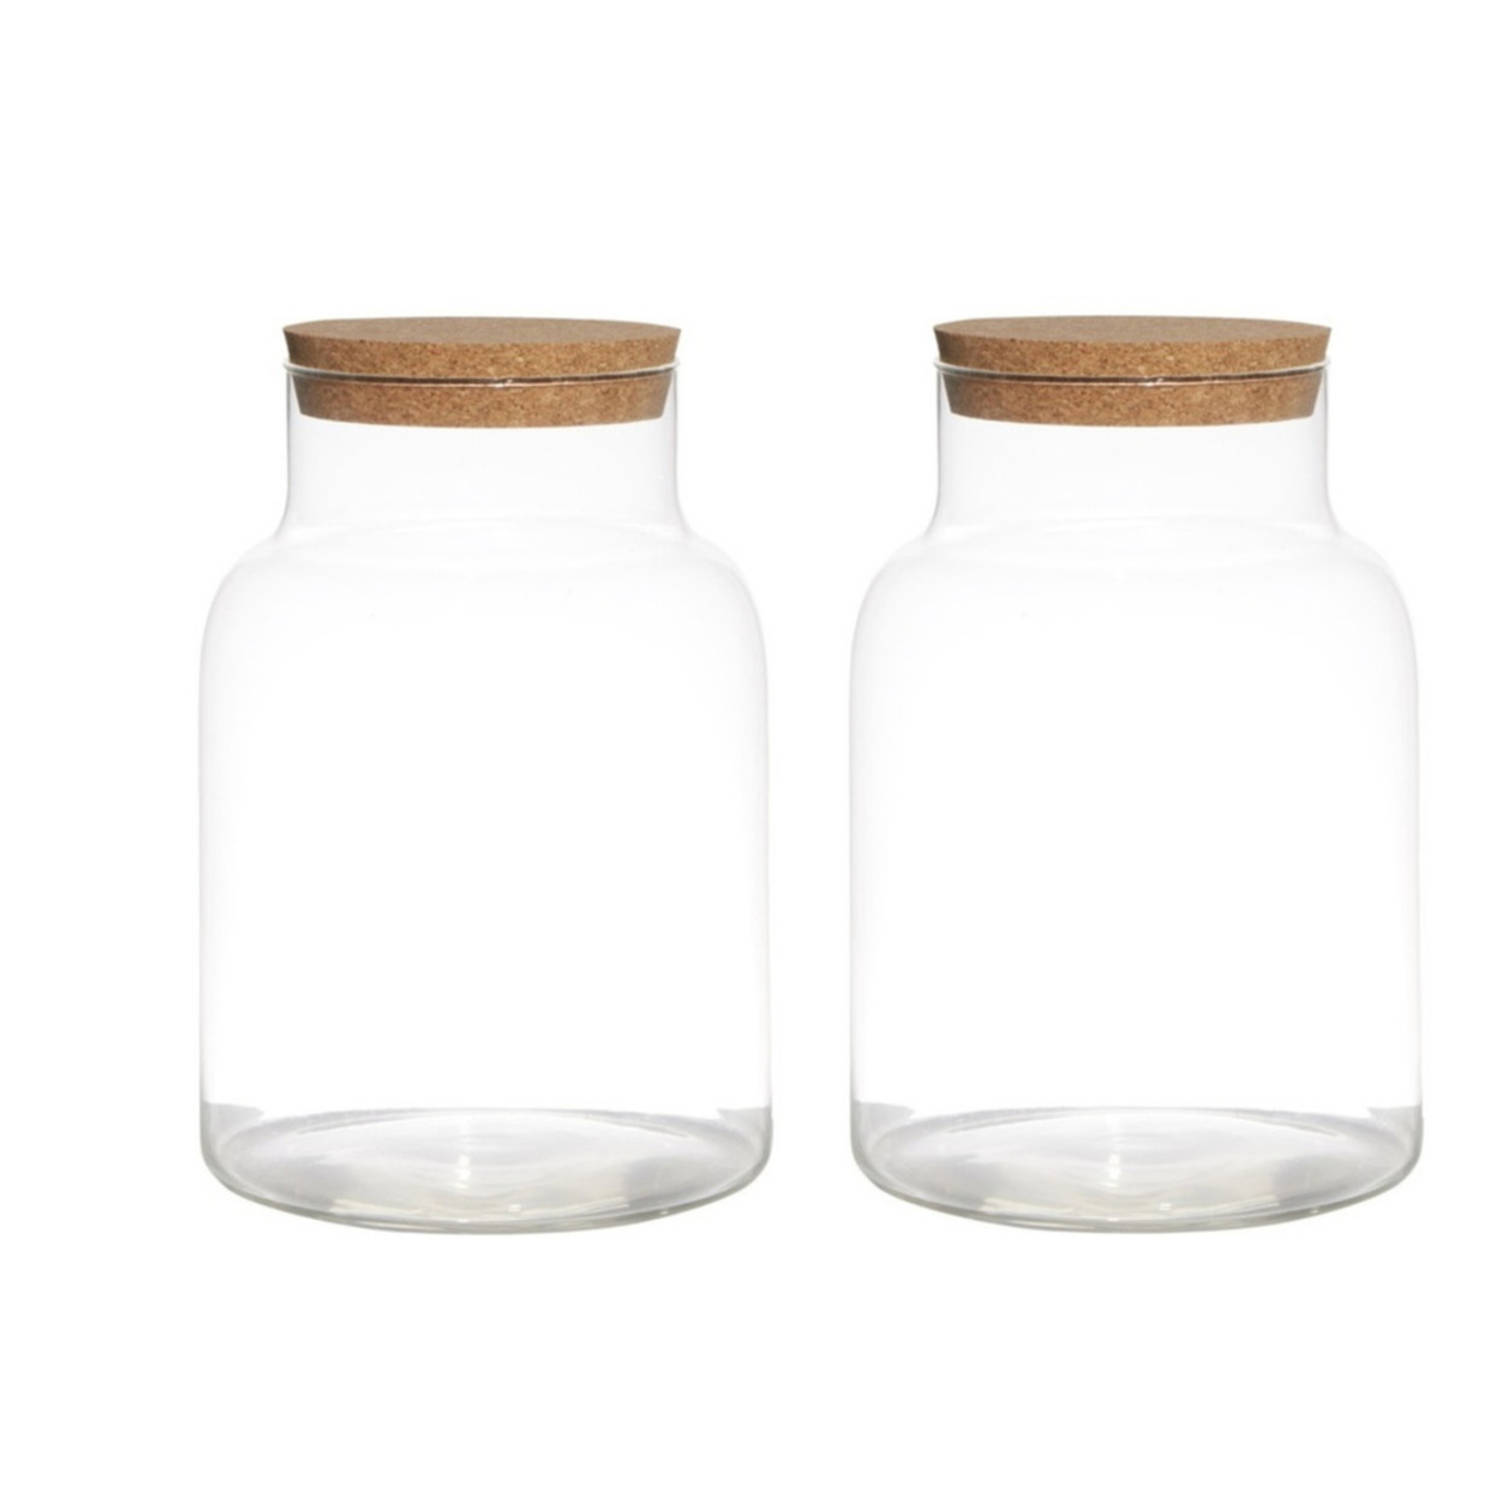 Bellatio Design Set van 2x stuks glazen voorraadpotten/snoeppotten/terrarium vazen van 17.5 x 25 cm met kurk dop